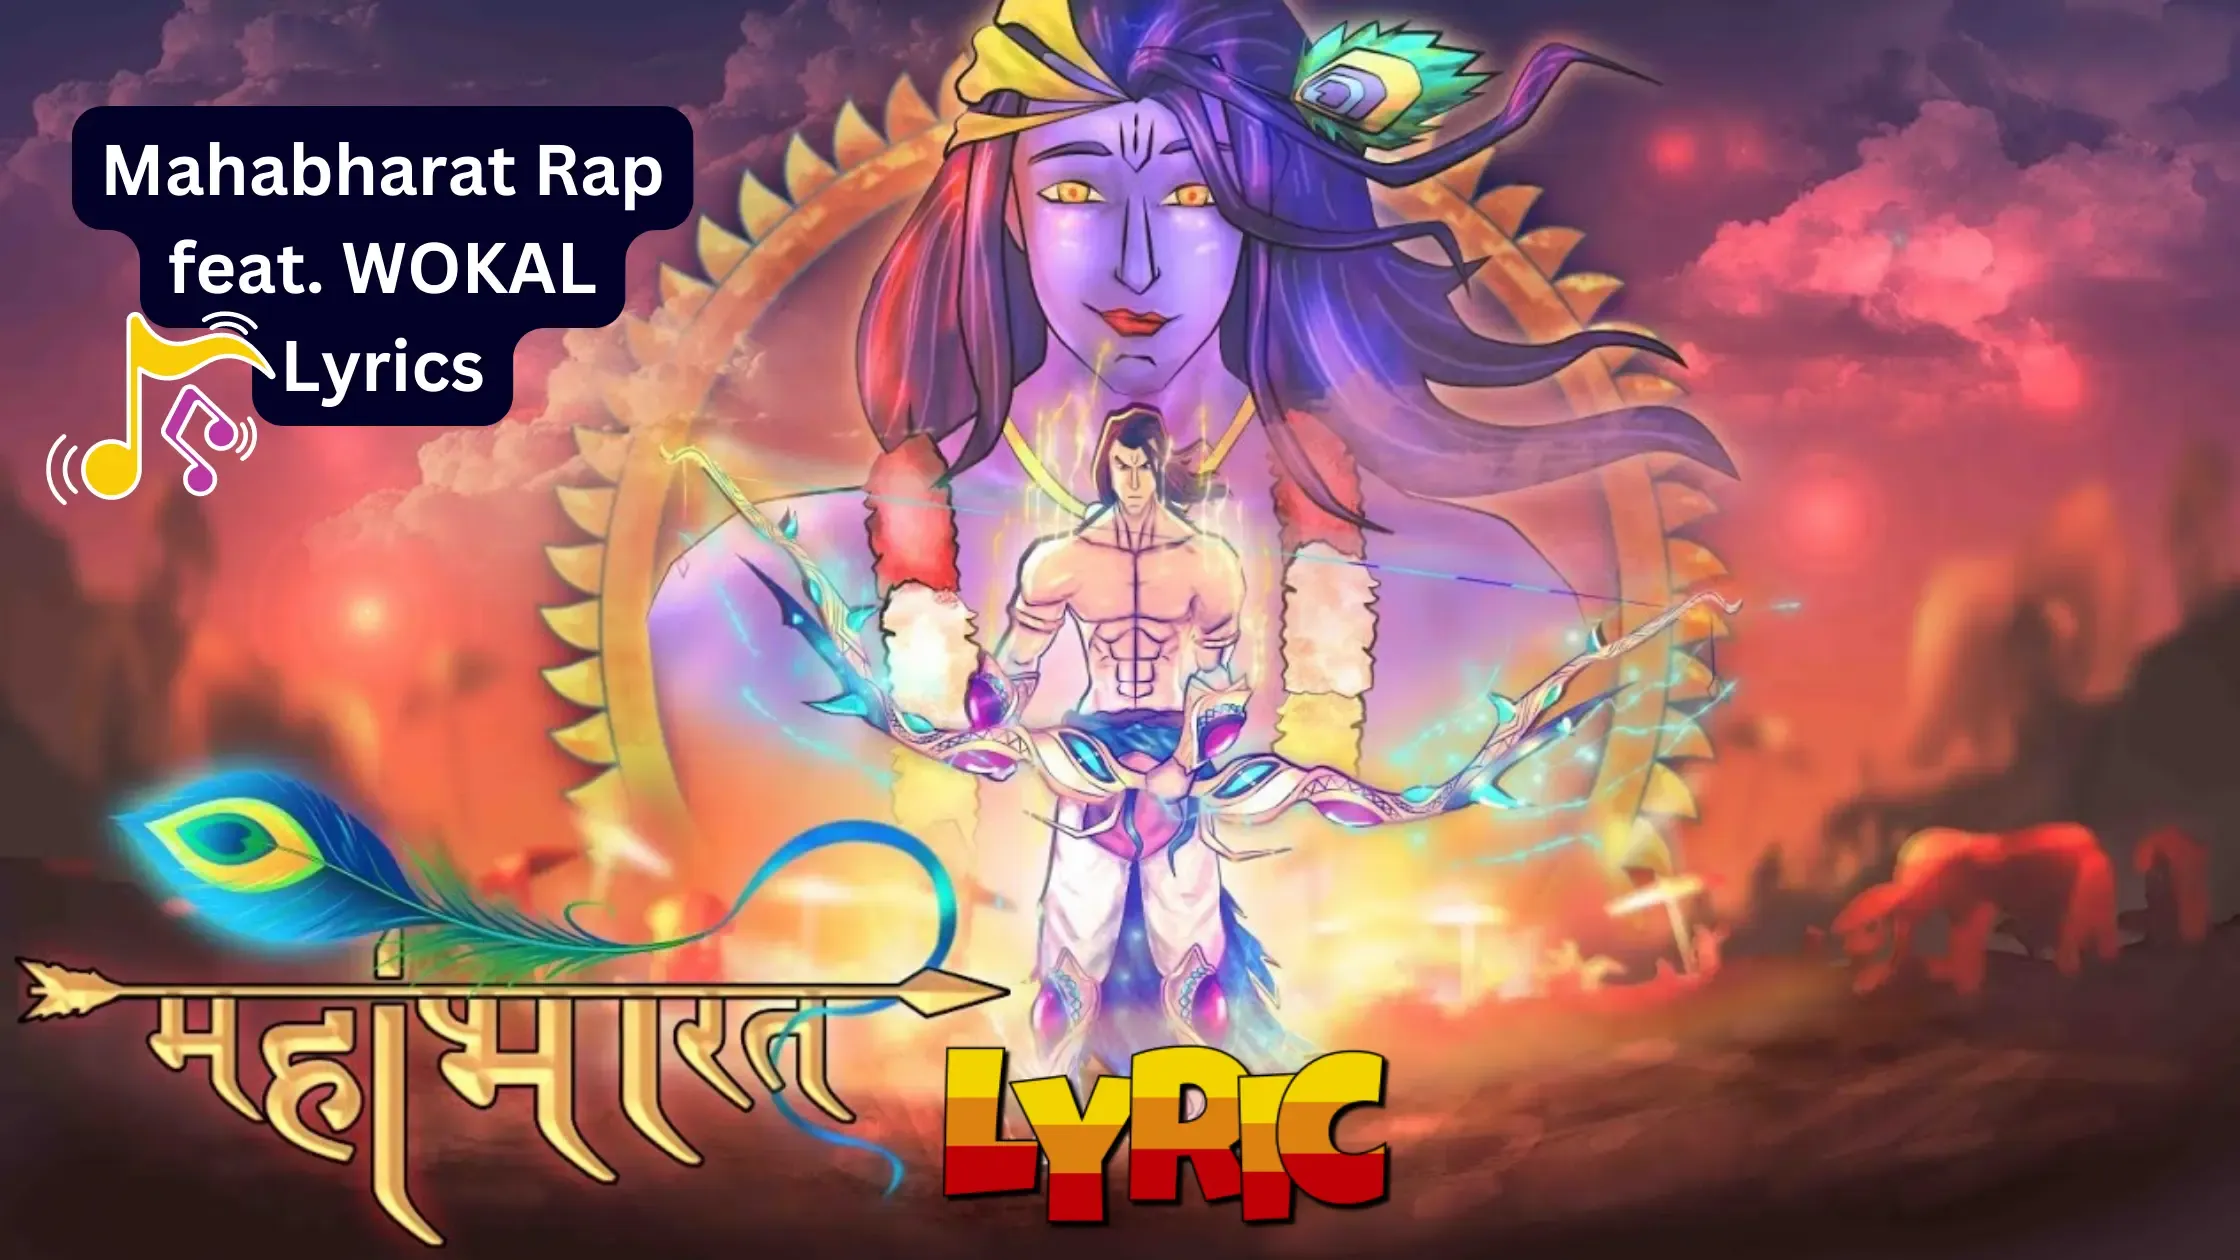 Mahabharat Rap Lyrics,सत्य सत्य क्लेश कलंक द्वापर युग की कहानी,Mahabharat Rap feat WOKAL